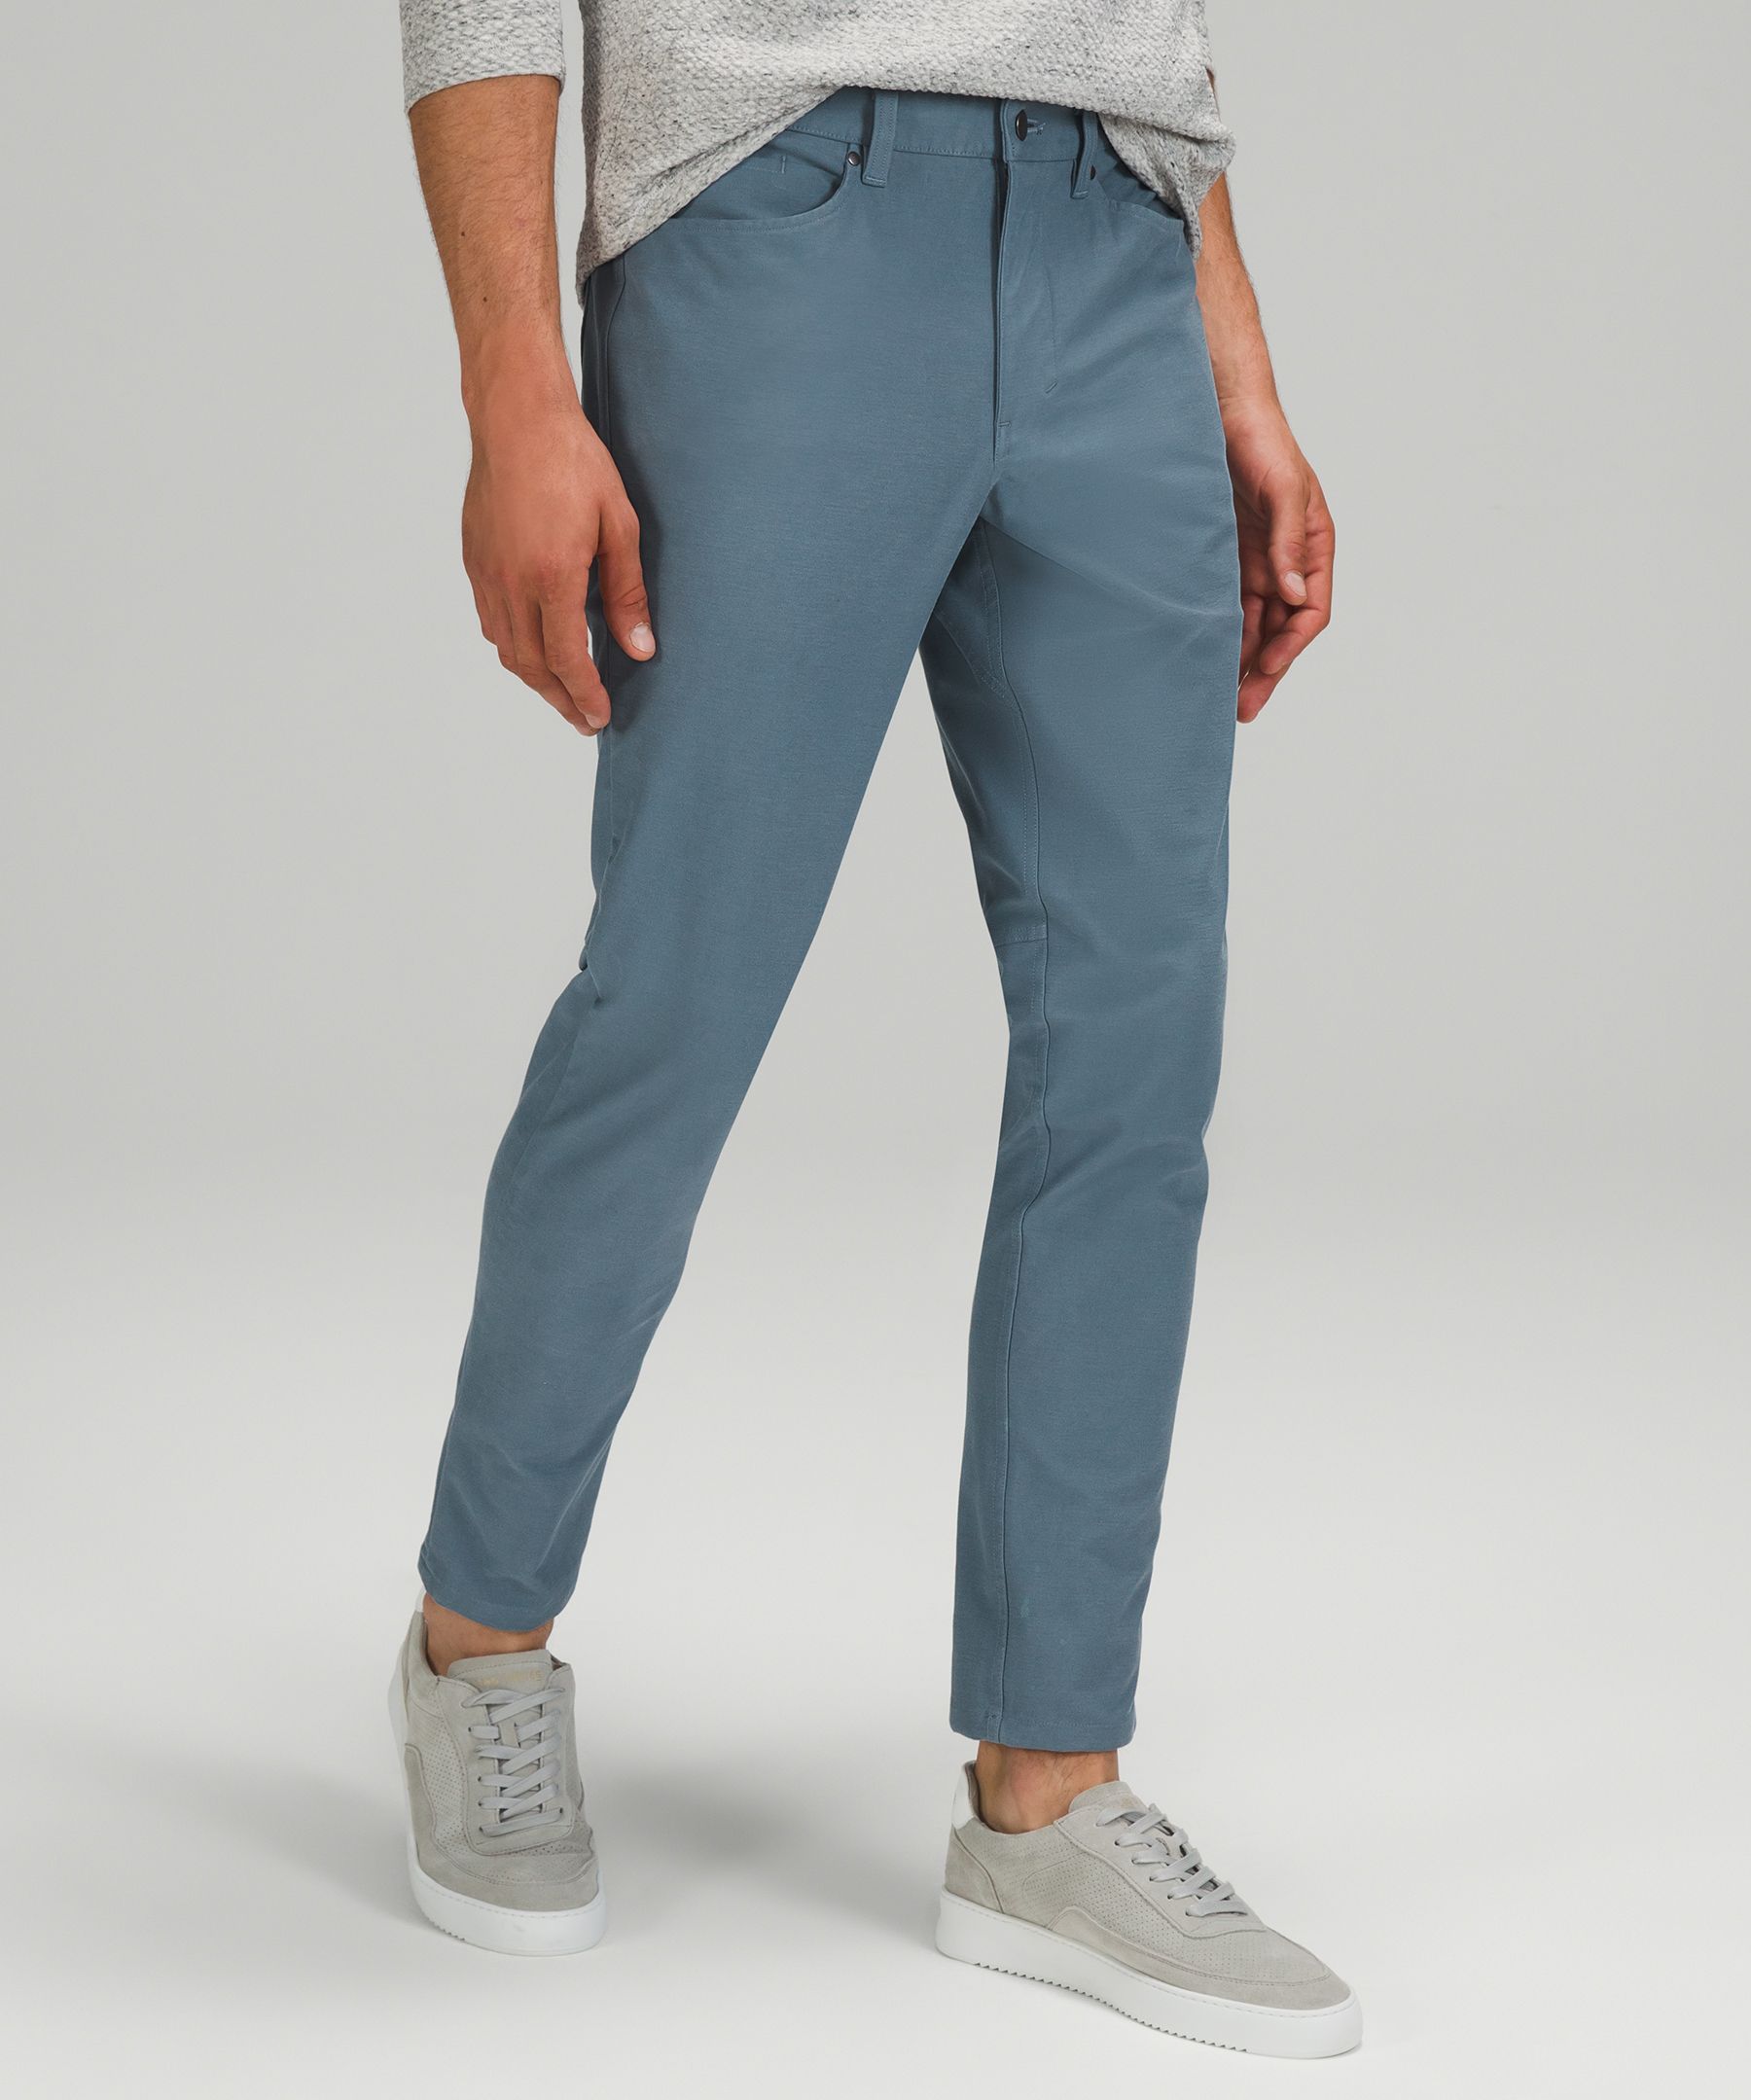 Lululemon Abc Slim-fit Pants 32" Utilitech In River Blue